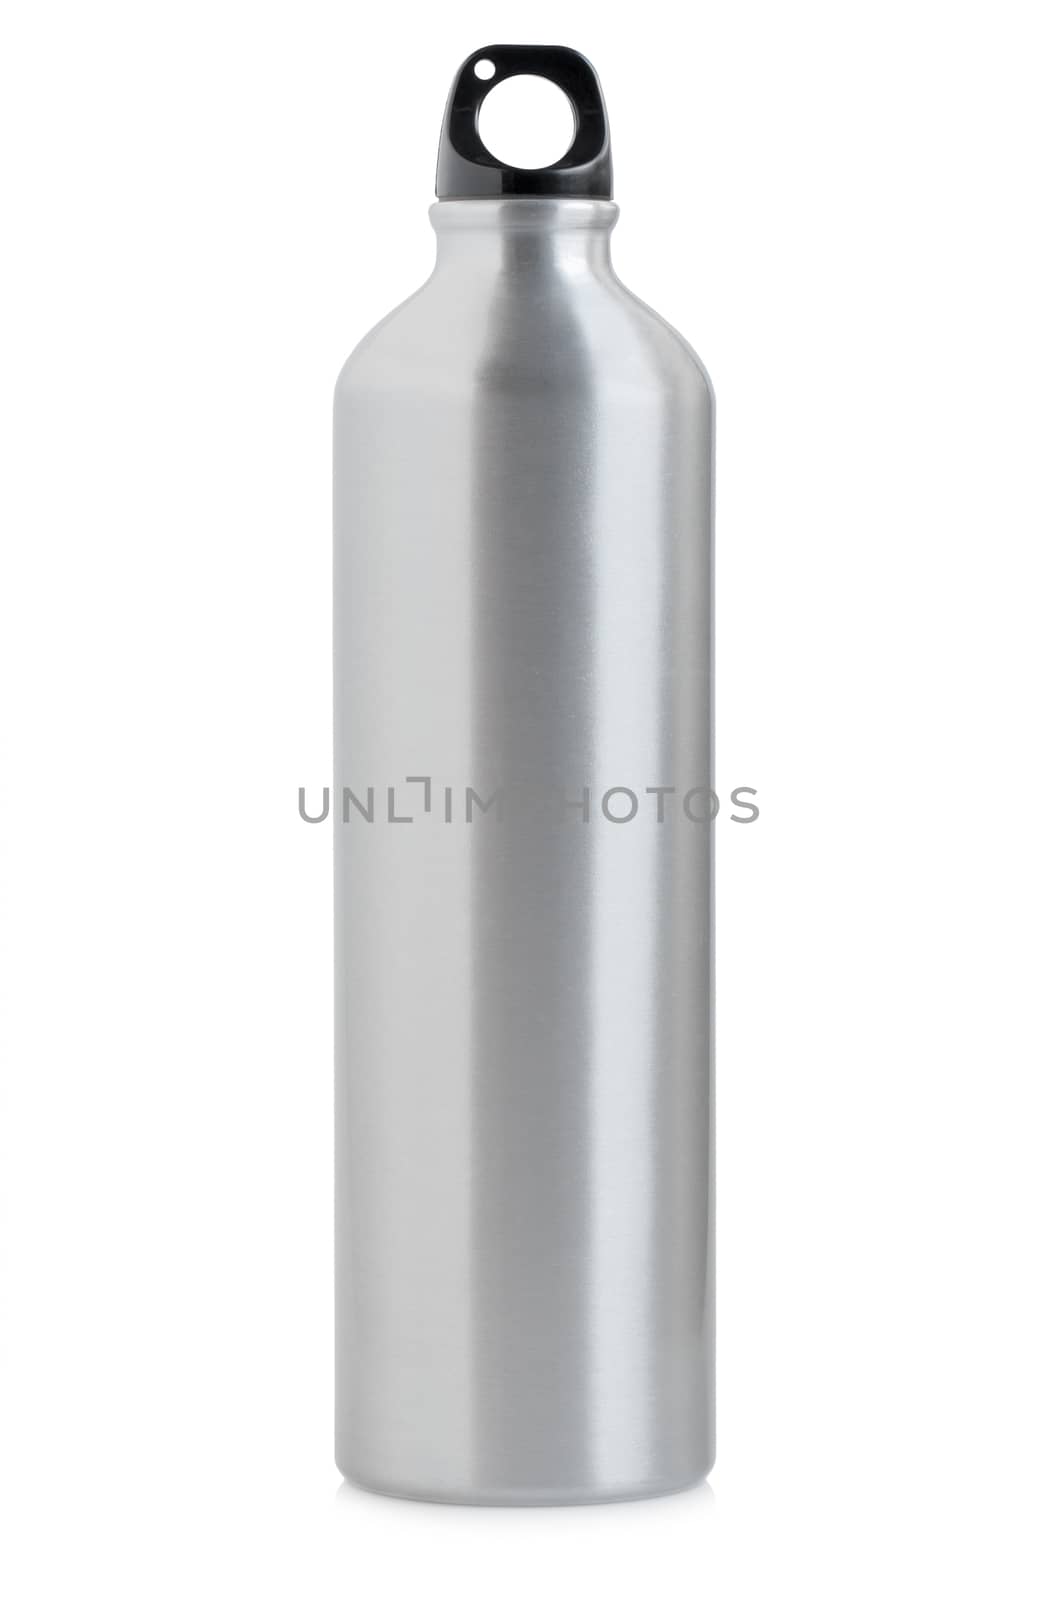 Aluminum bottle water isolated on white background